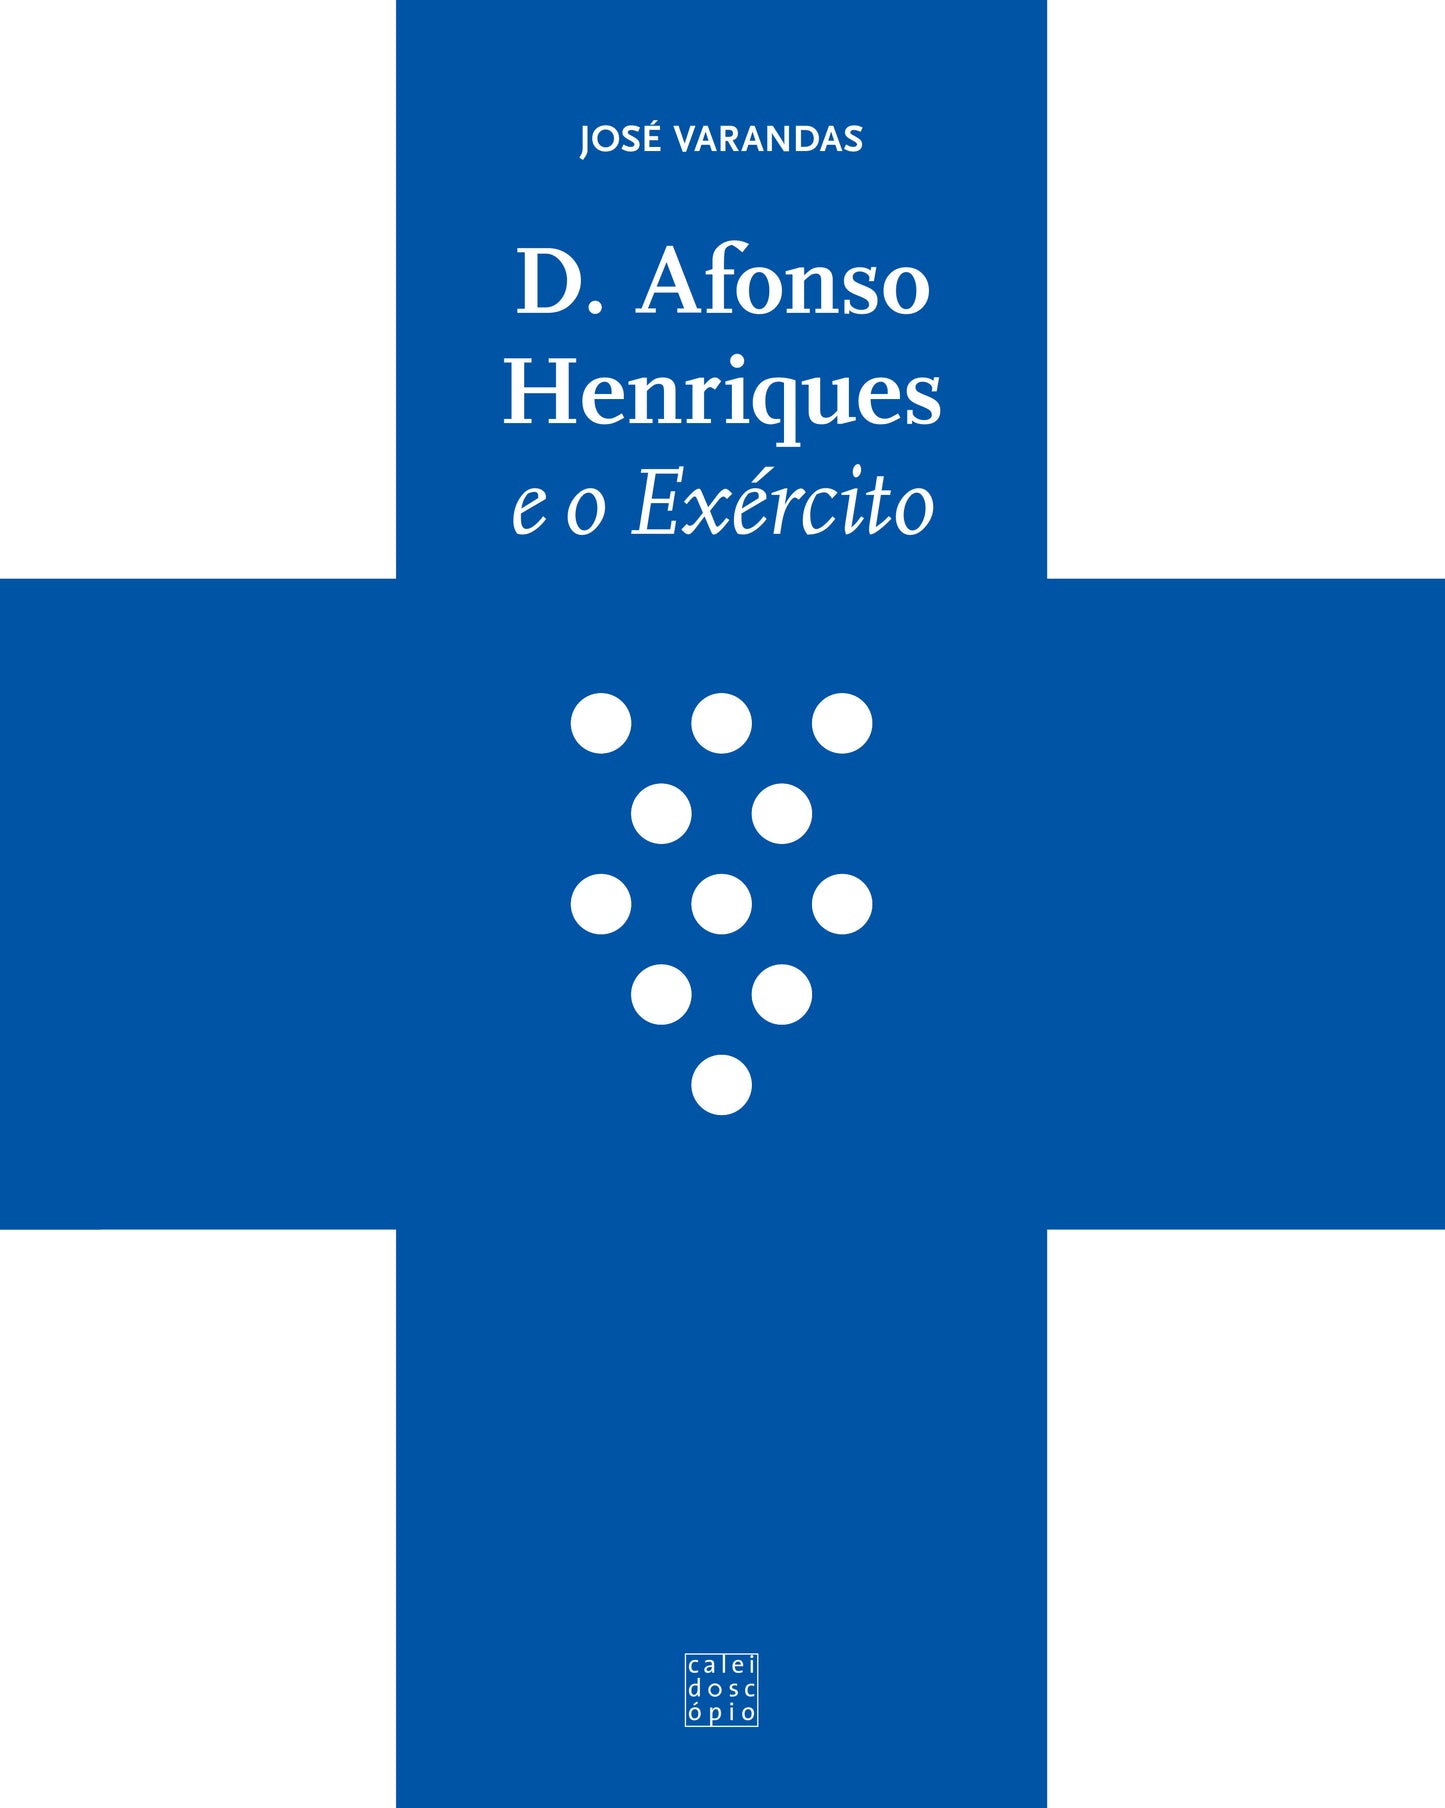 D. Afonso Henriques e o Exército